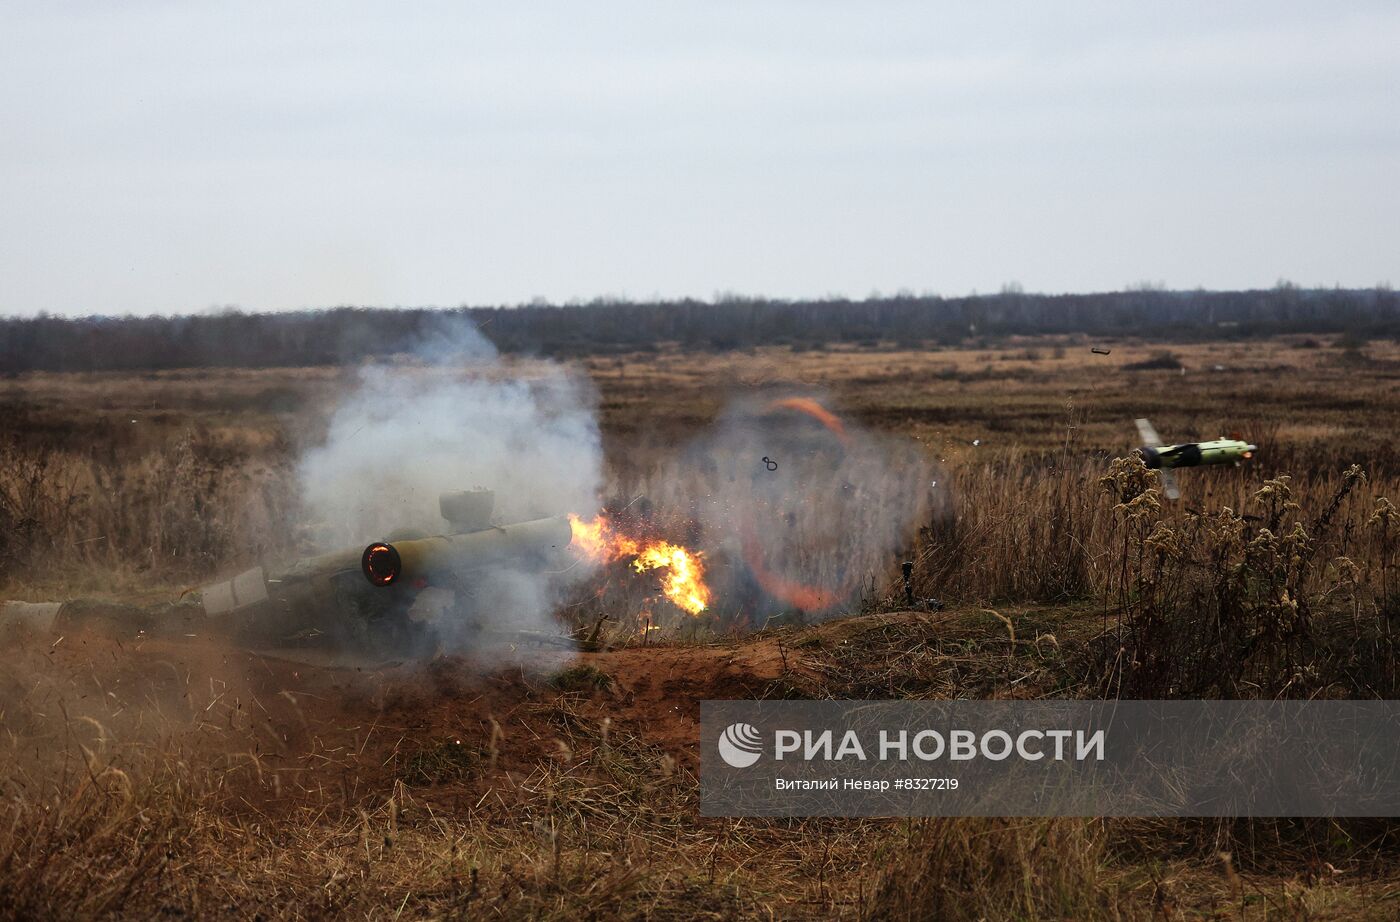 Боевые стрельбы из ПТРК "Фагот" в Калининградской области